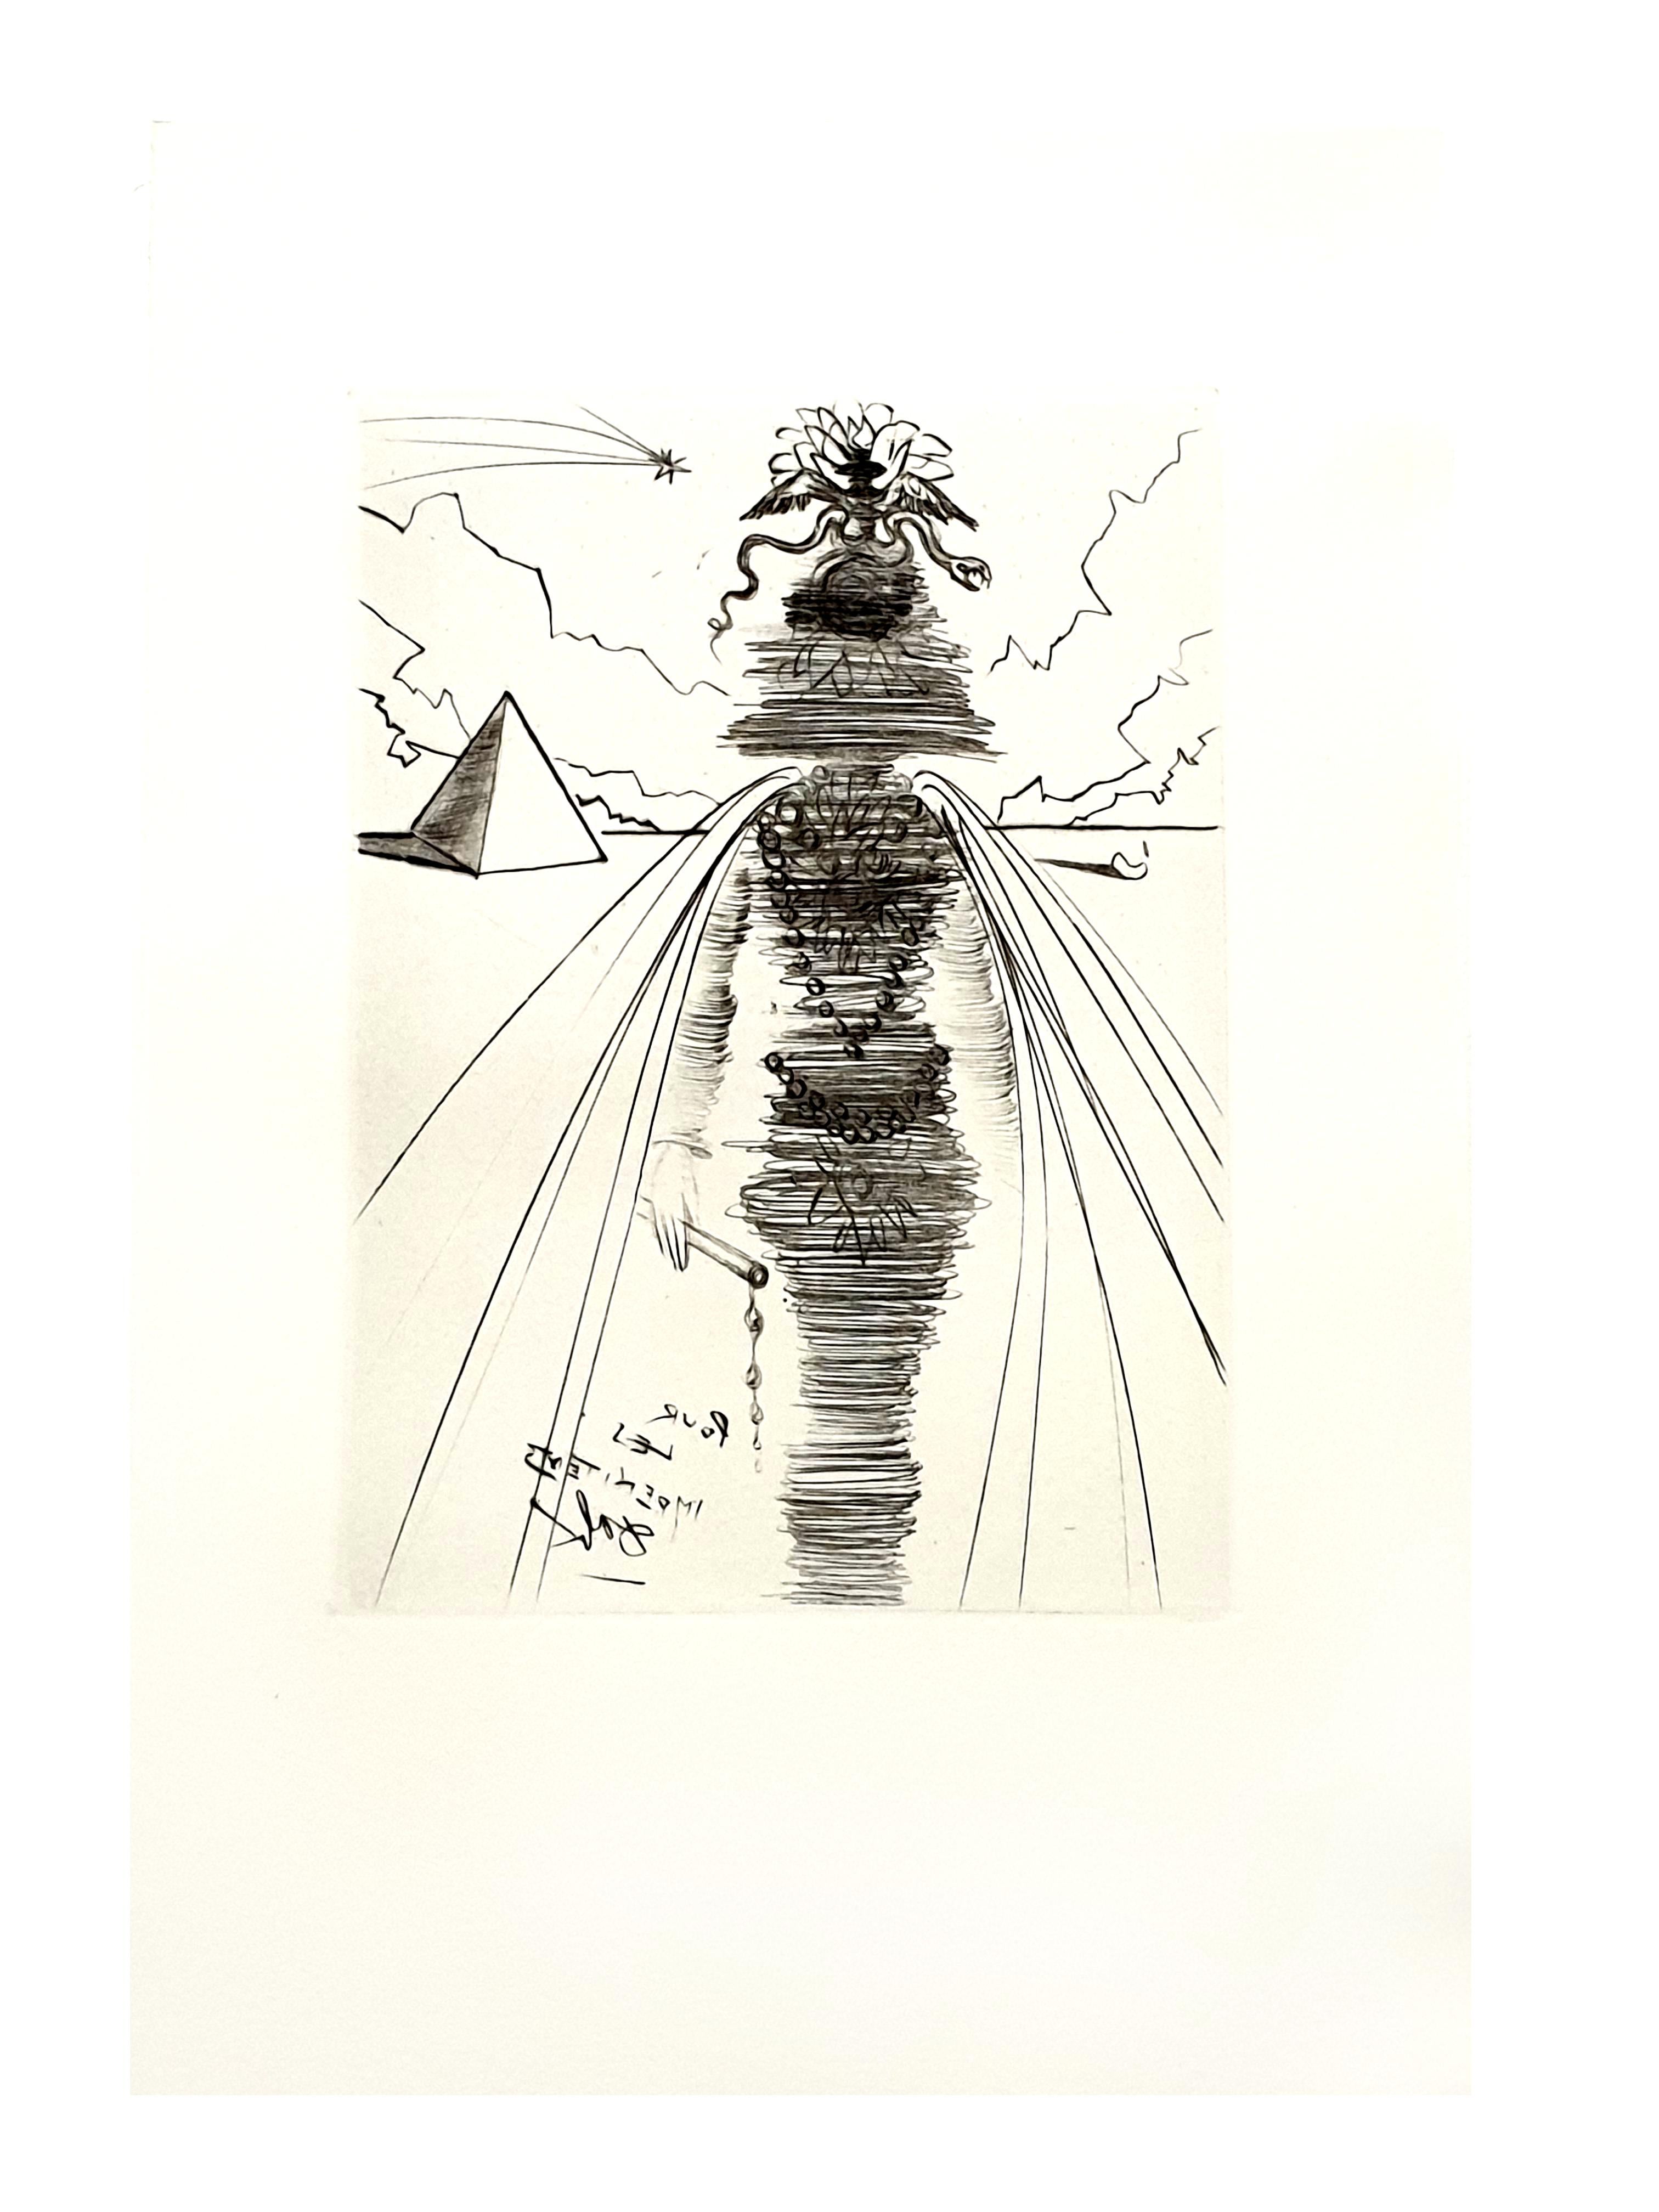 Salvador Dali - Cleopatra - Original Etching - Print by Salvador Dalí